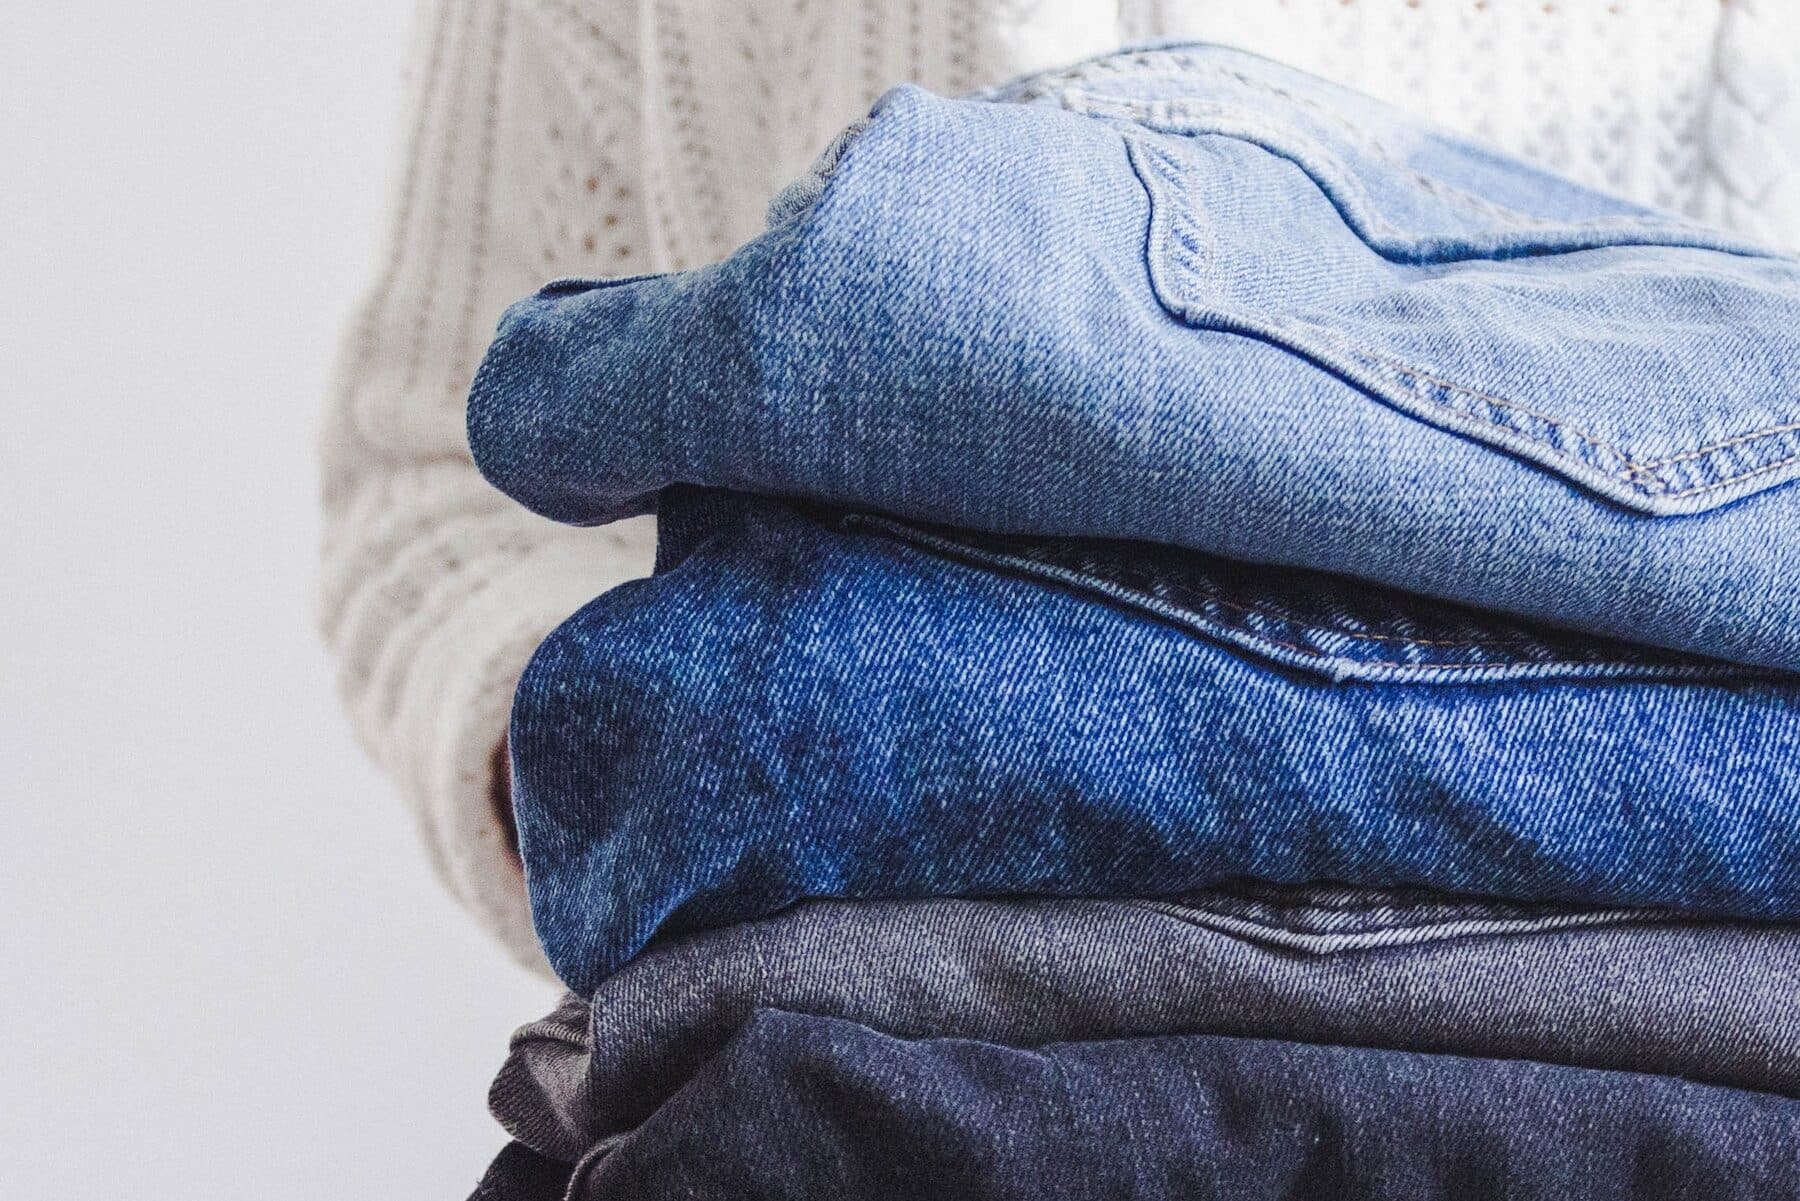 jeans, L&rsquo;atelier 13 Atipik lance une collecte de jeans usagés pour leur offrir une seconde vie, Made in Marseille